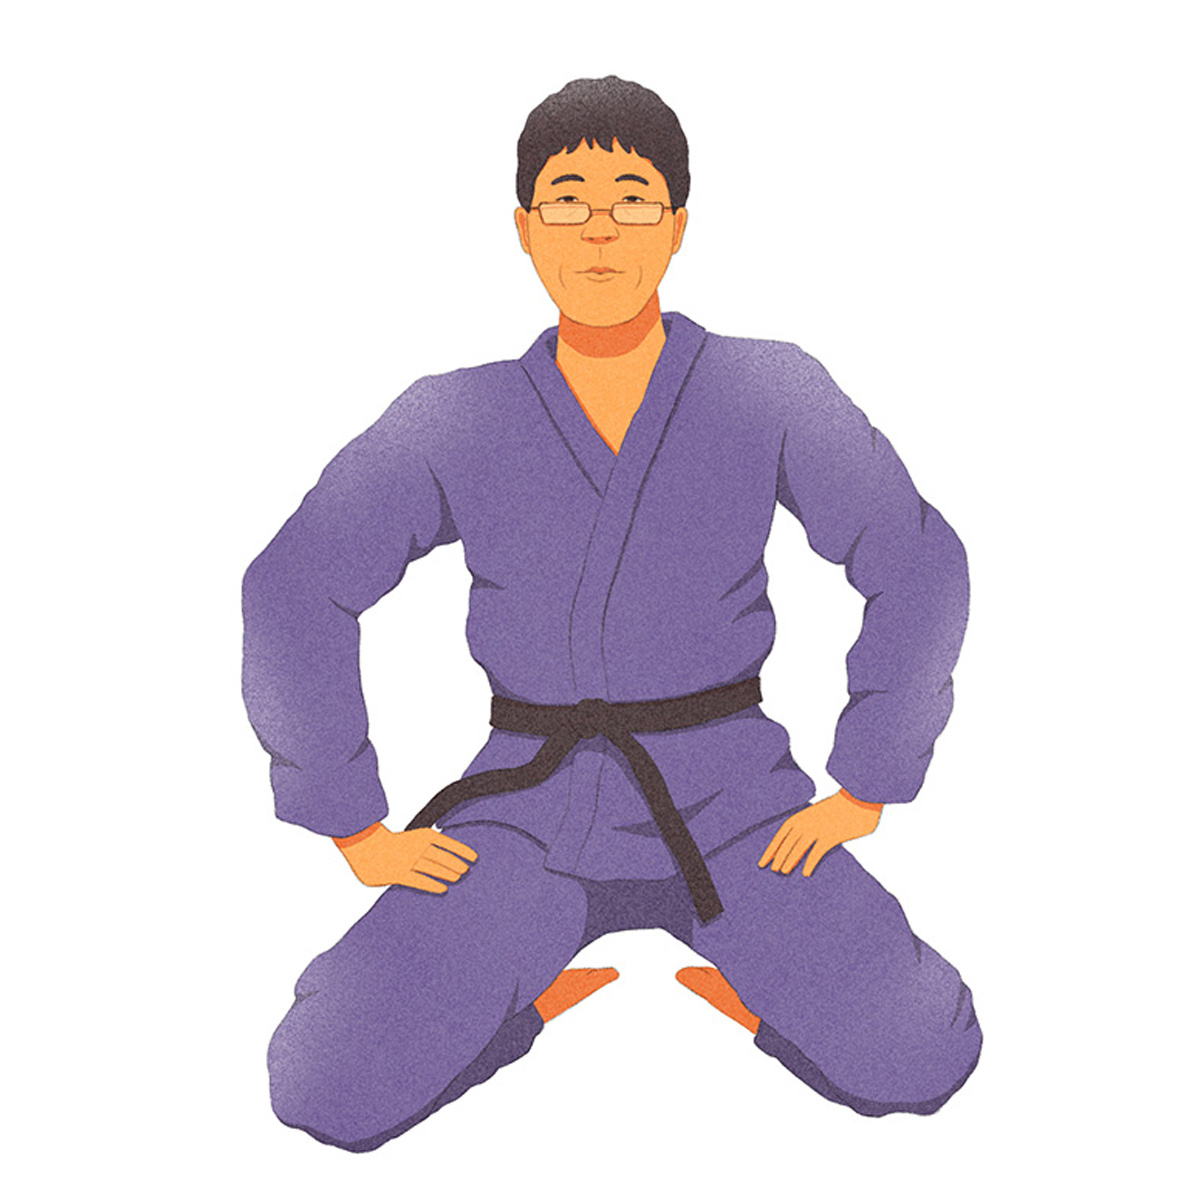 Ilustração do judoca Futoshi Urata, ajoelhado, em kimono azul, com as mãos nas pernas.